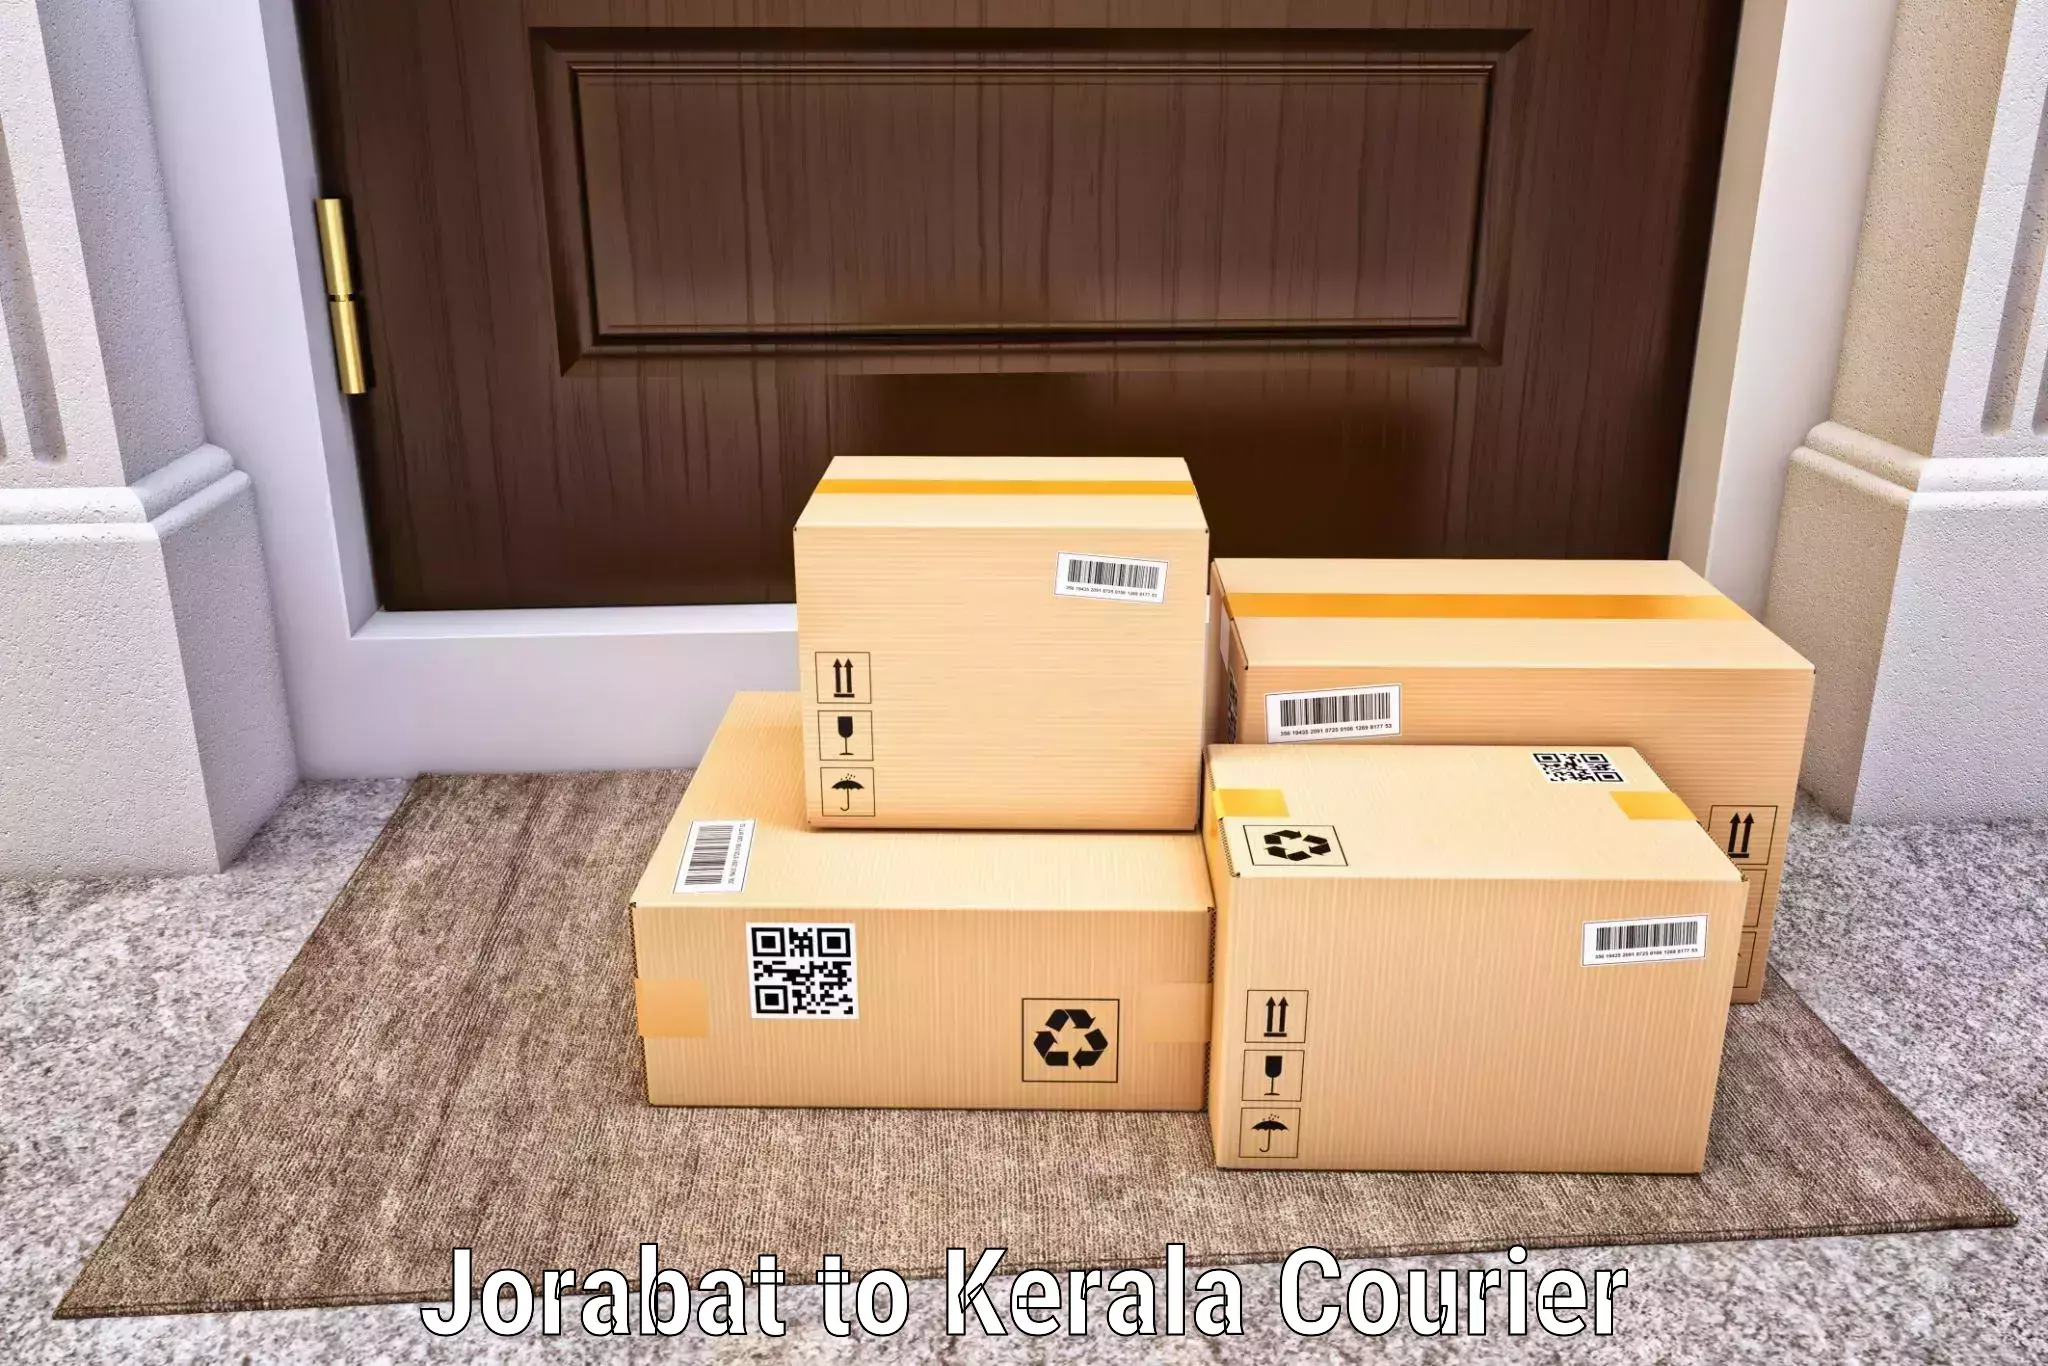 International courier rates Jorabat to Panthalam